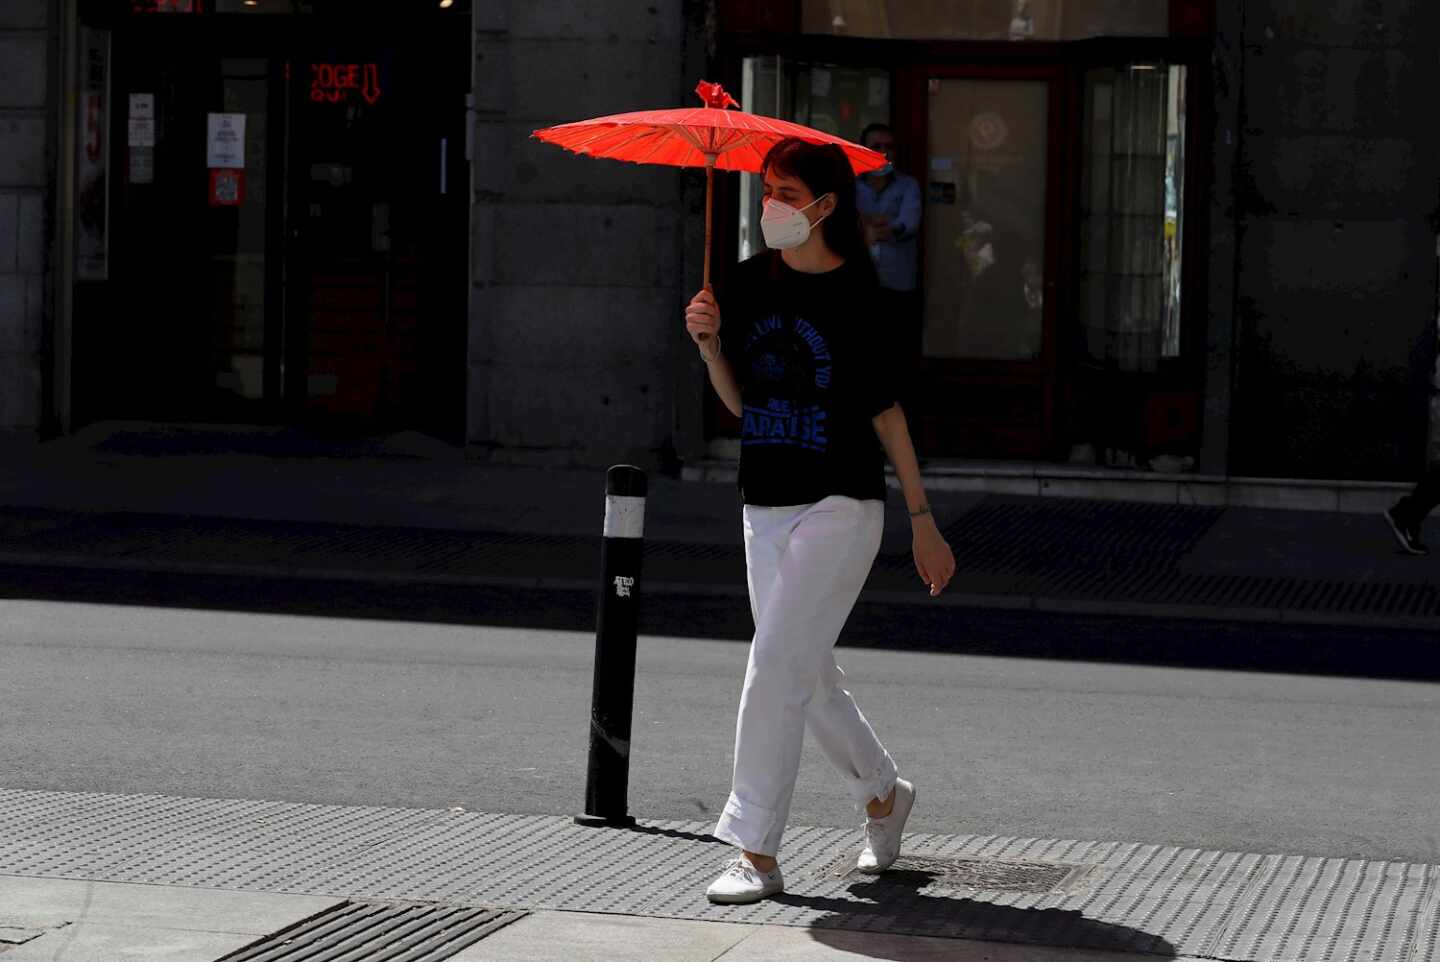 País Vasco rompe el termómetro: 43ºC este jueves